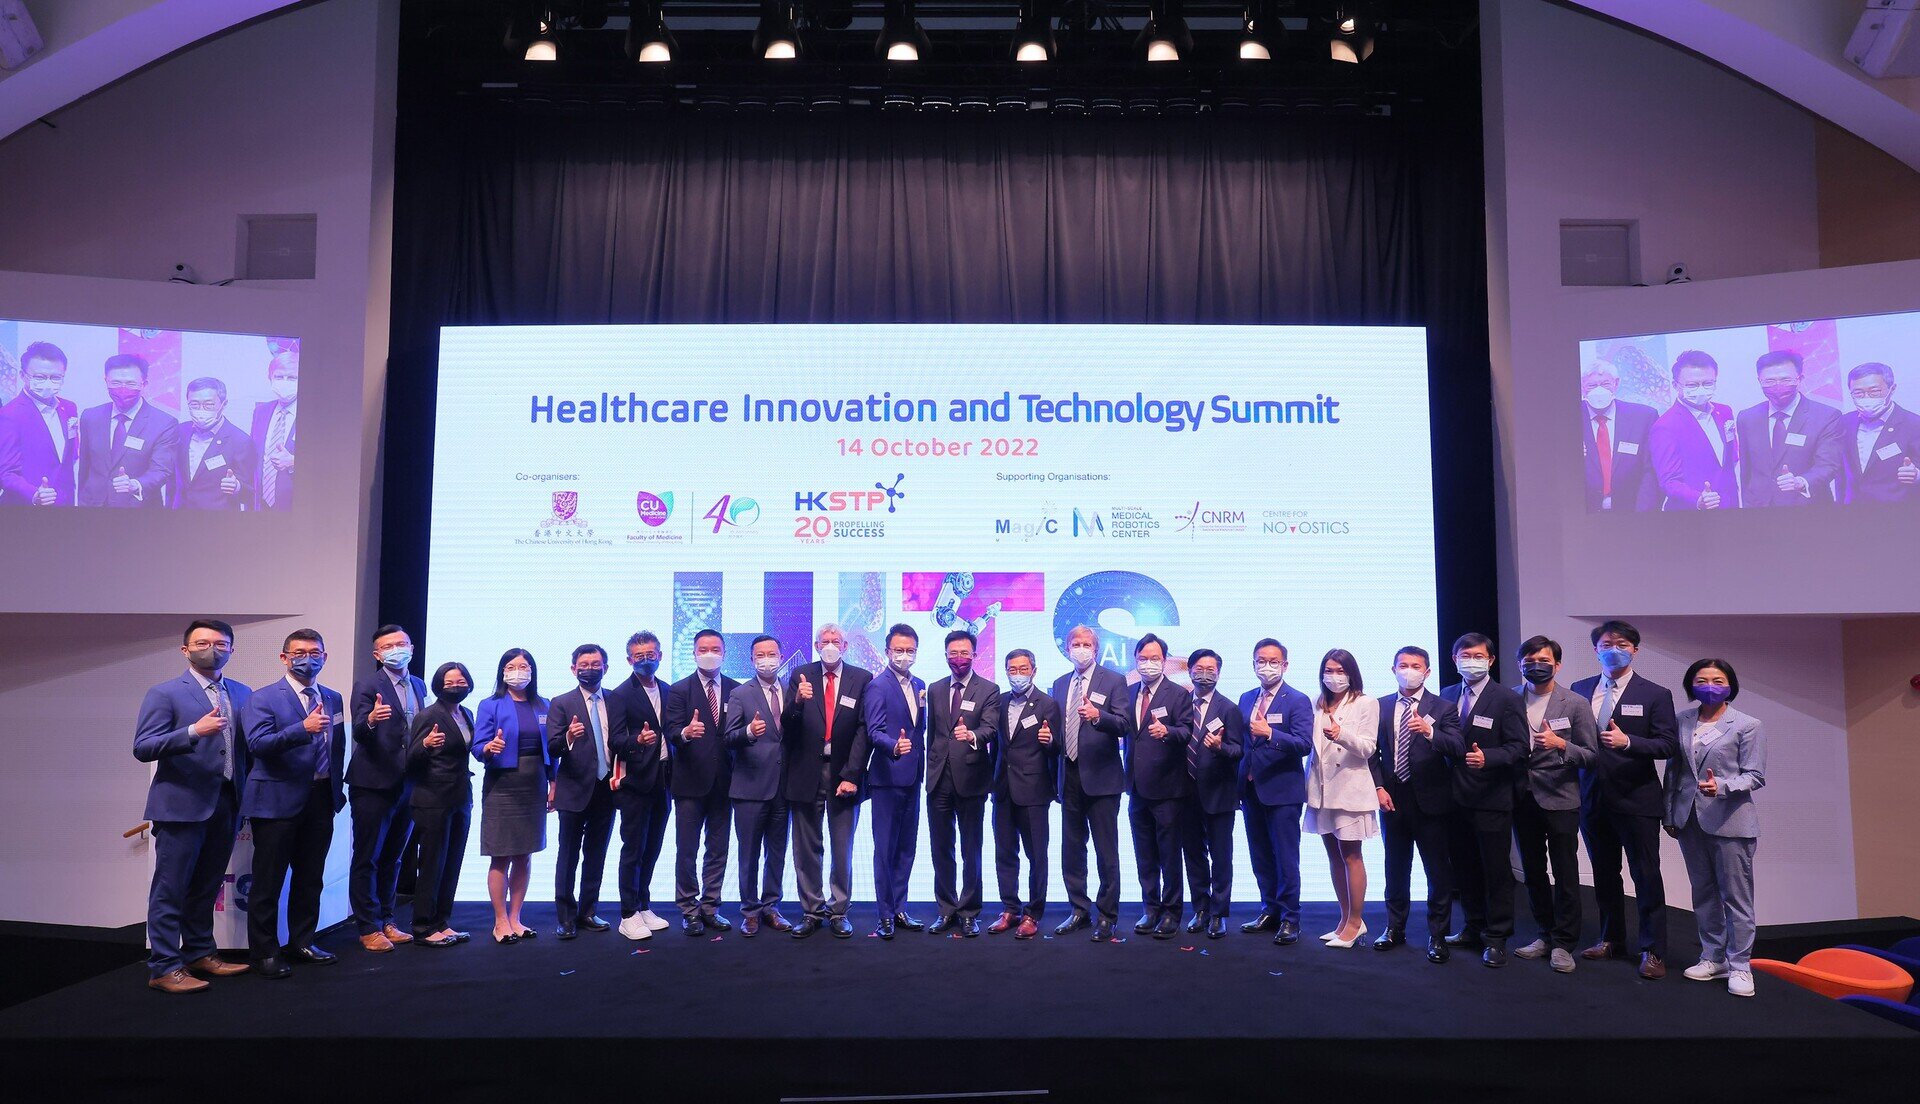 中大醫學院與香港科技園公司合作舉辦「醫療創新及科技峰會」 展示香港轉化研究成果